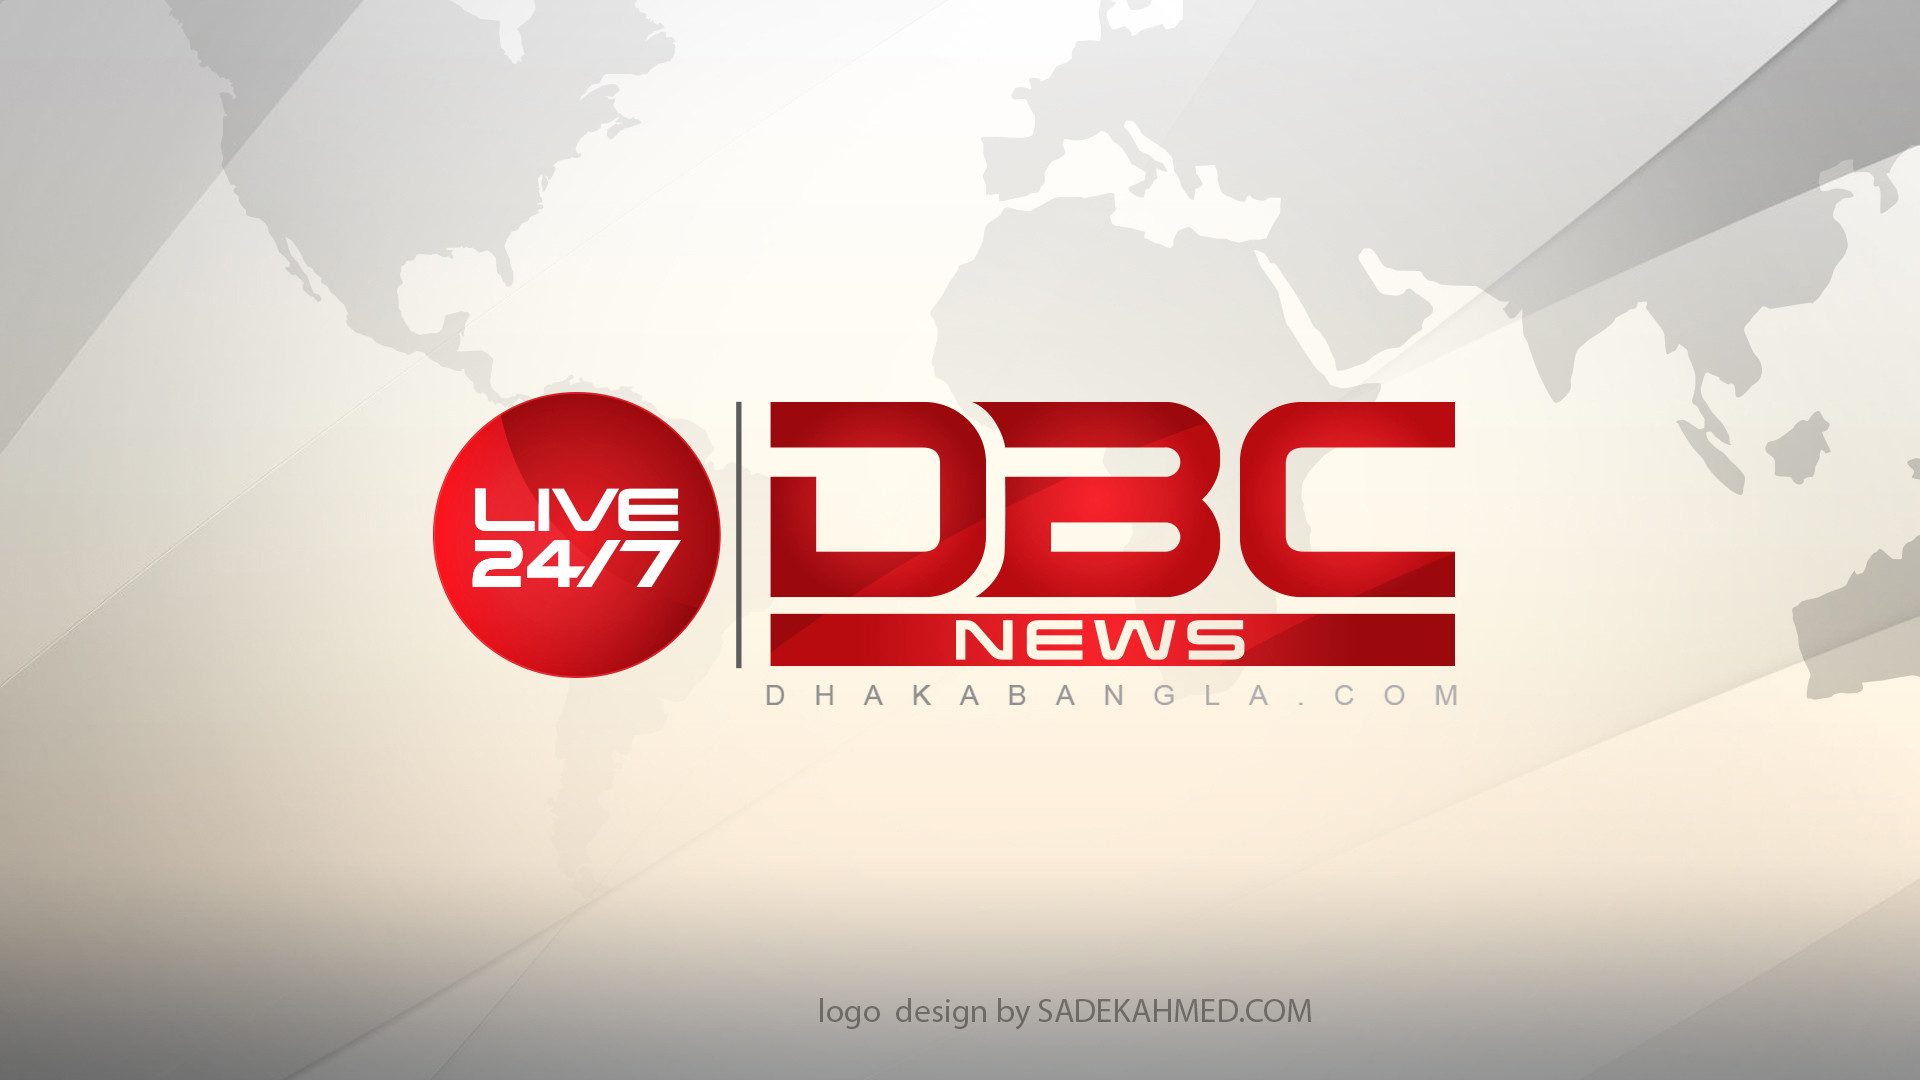 dbc news live 24 7 pre 17